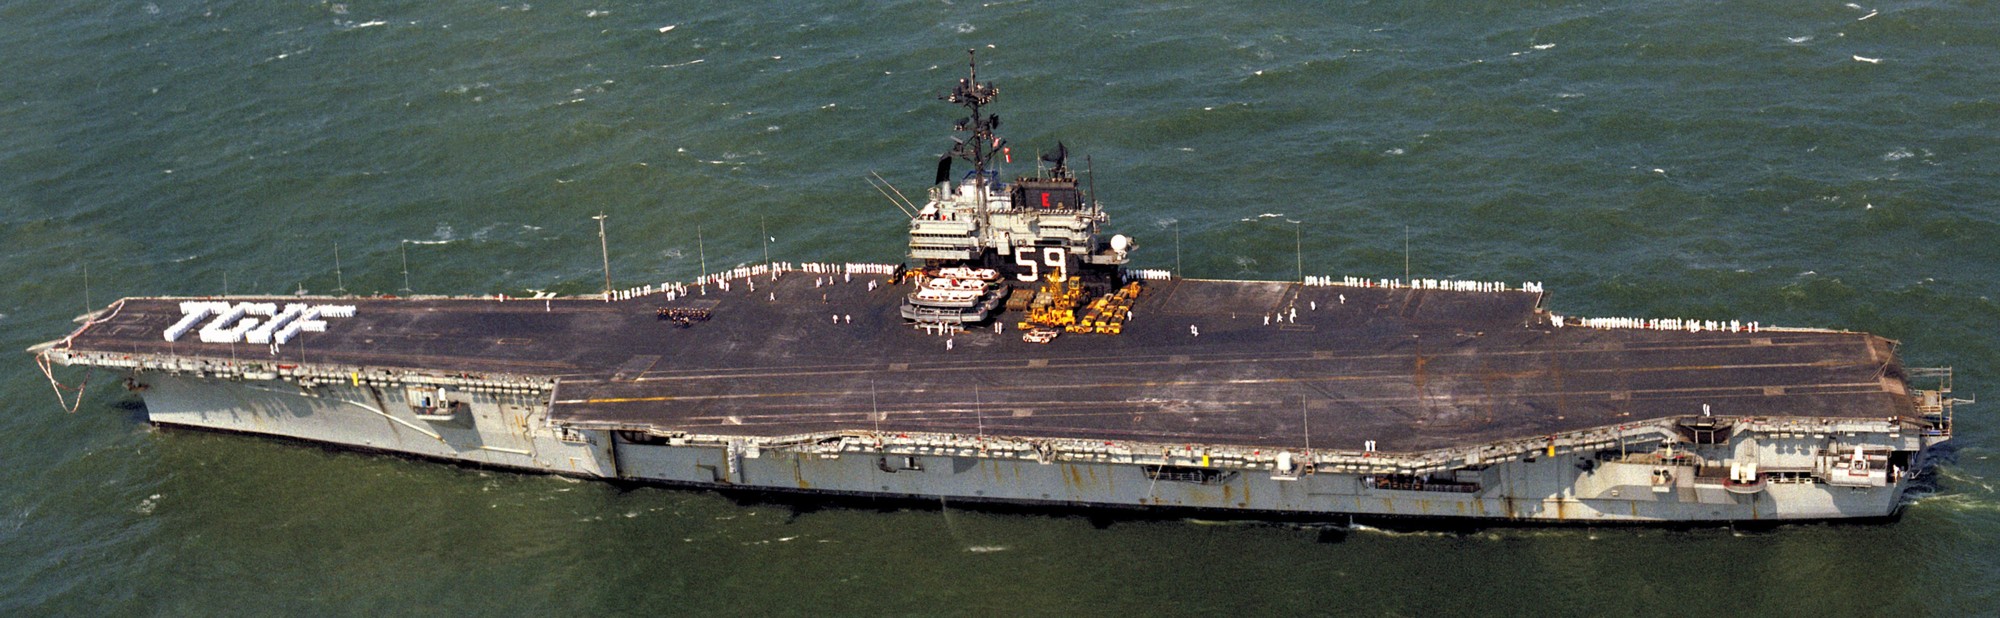 cv-59 uss forrestal aircraft carrier us navy 84